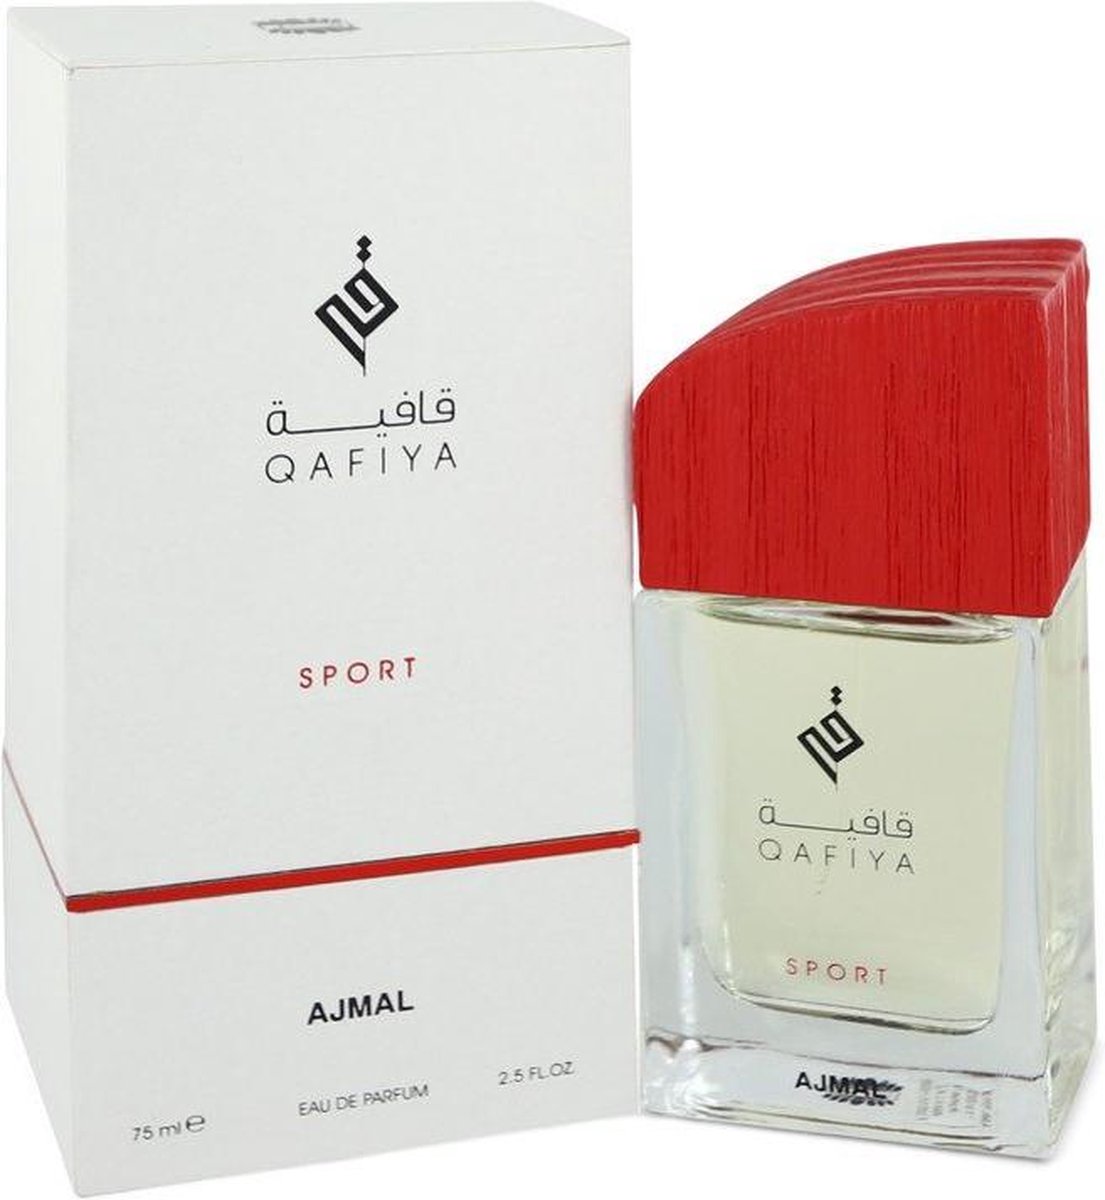 Qafiya Sport by Ajmal 75 ml - Eau De Parfum Spray